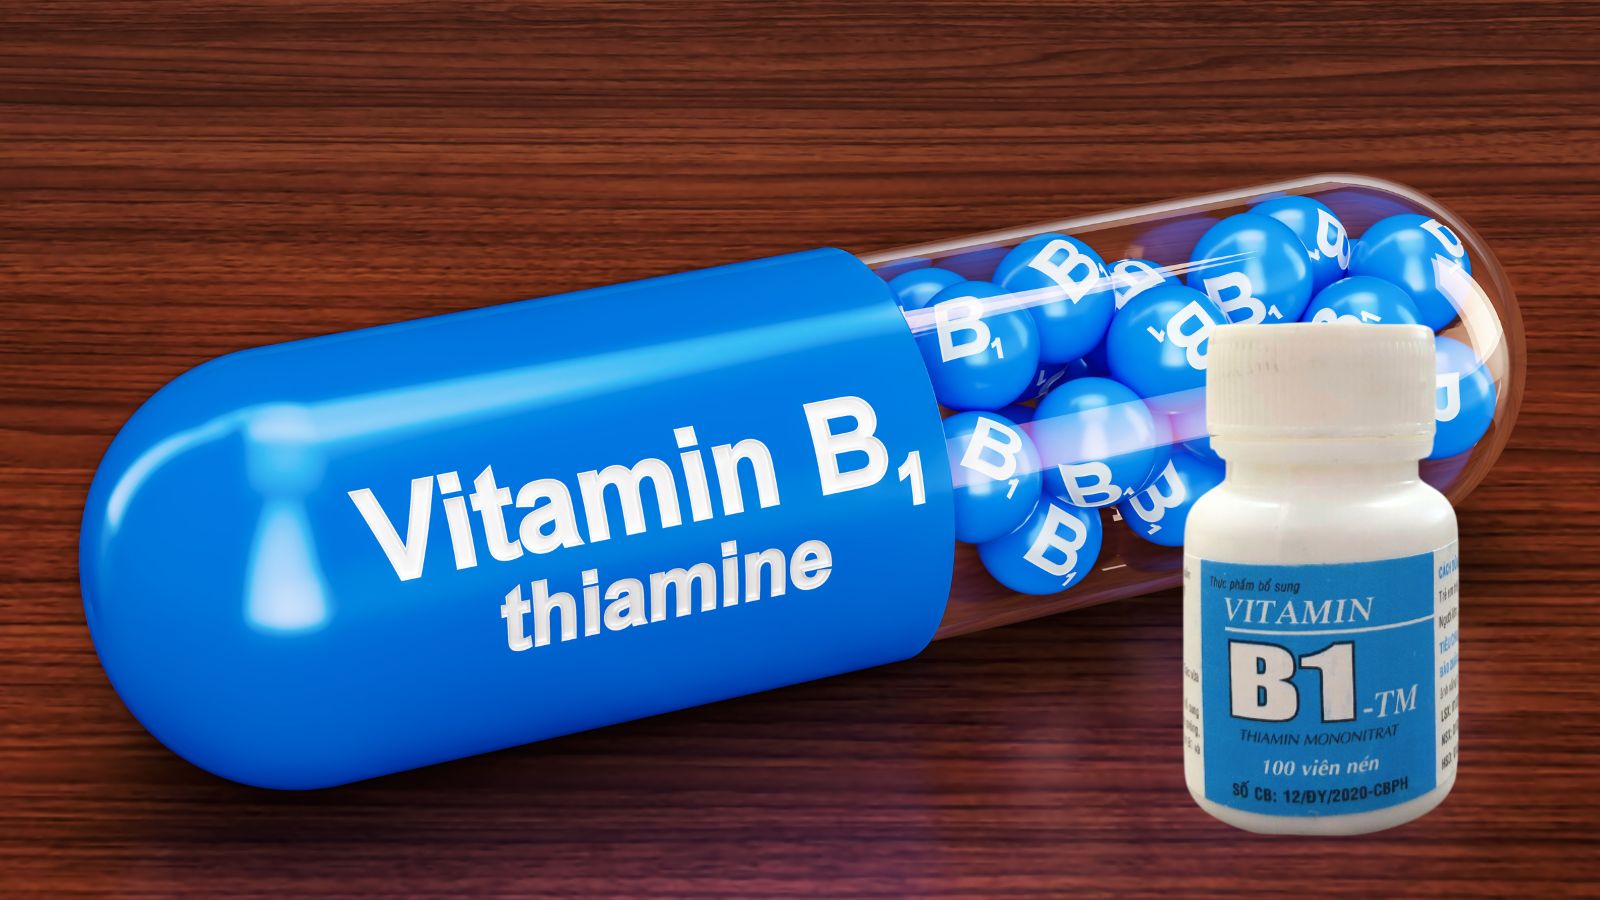 Vitamin B1 tham gia vào nhiều hoạt động giúp duy trì chức năng cơ thể